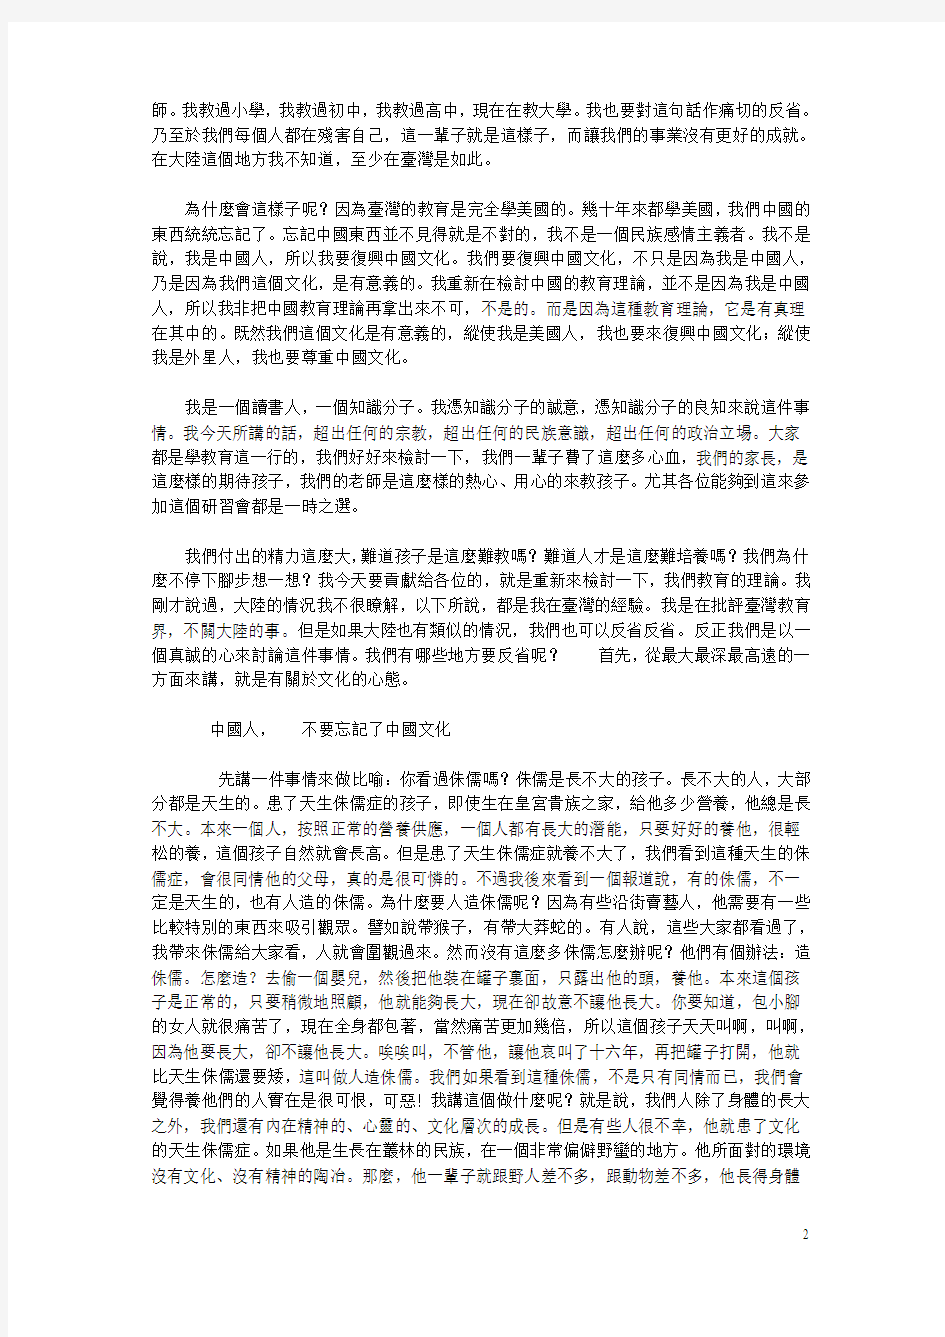 2001年王财贵老师暑期大陆巡回讲座 北京师范大学讲演